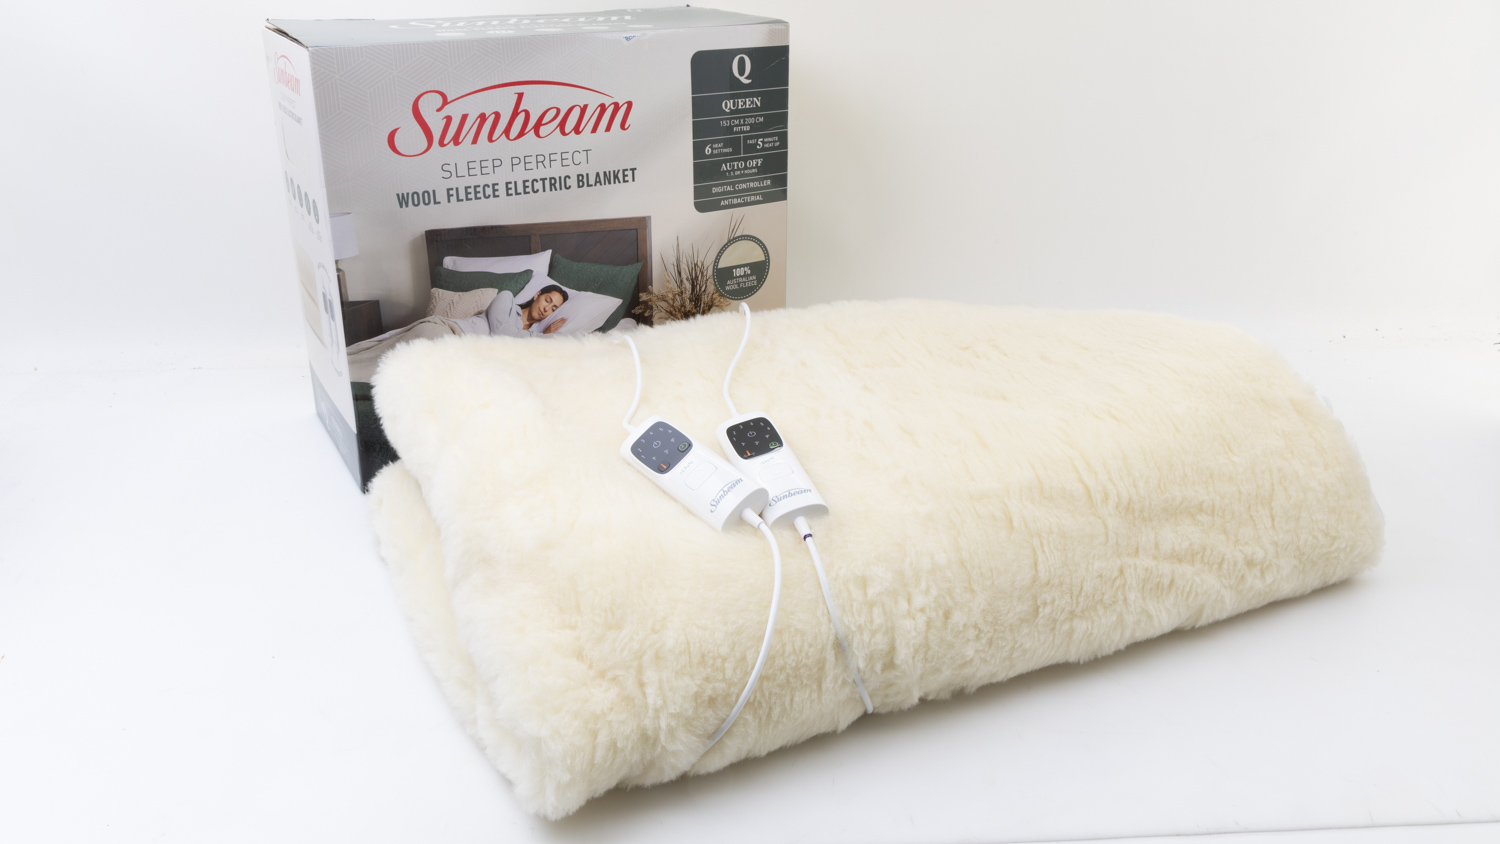 Sunbeam Sleep Perfect Wool Fleece Electric Blanket BLW6651 carousel image